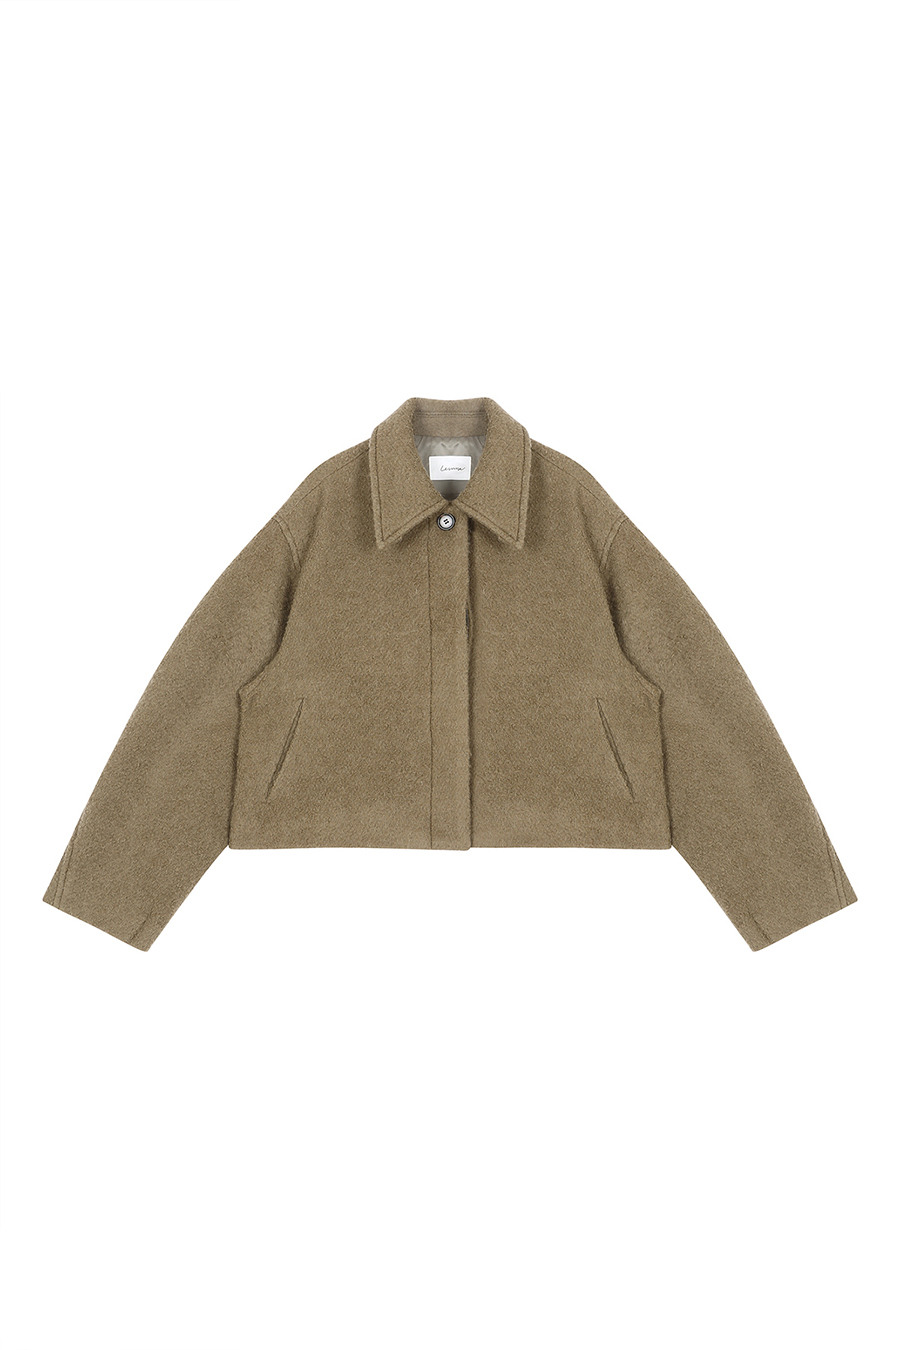 Wool Blend Short Jacket - Khaki | W Concept